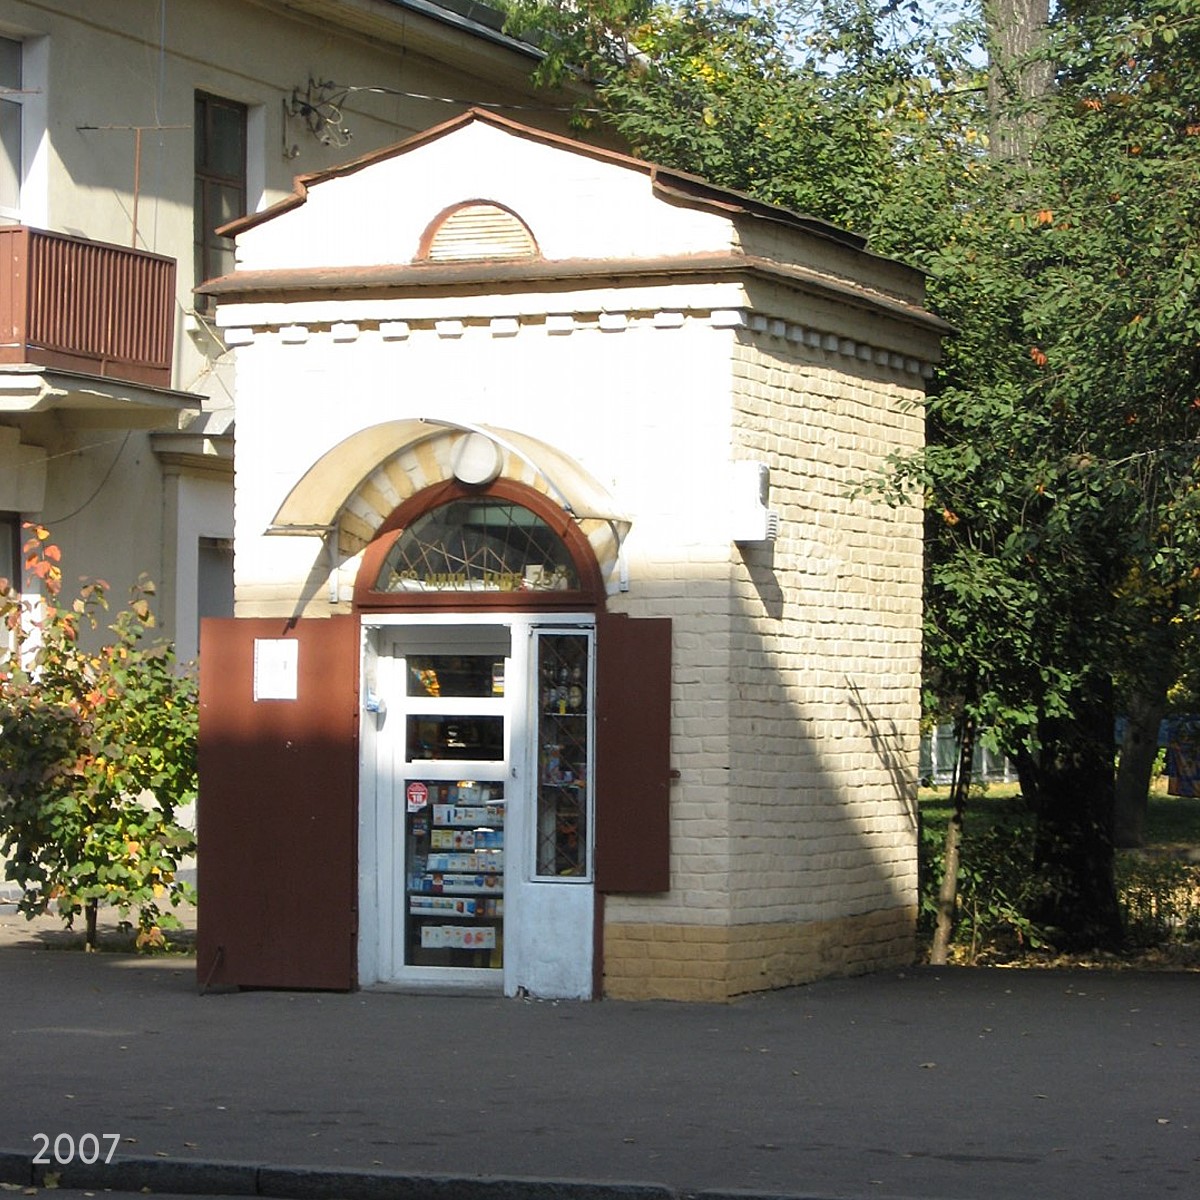 История маленького домика на Осмоловке в Минске: как он выглядел в 2007 году.